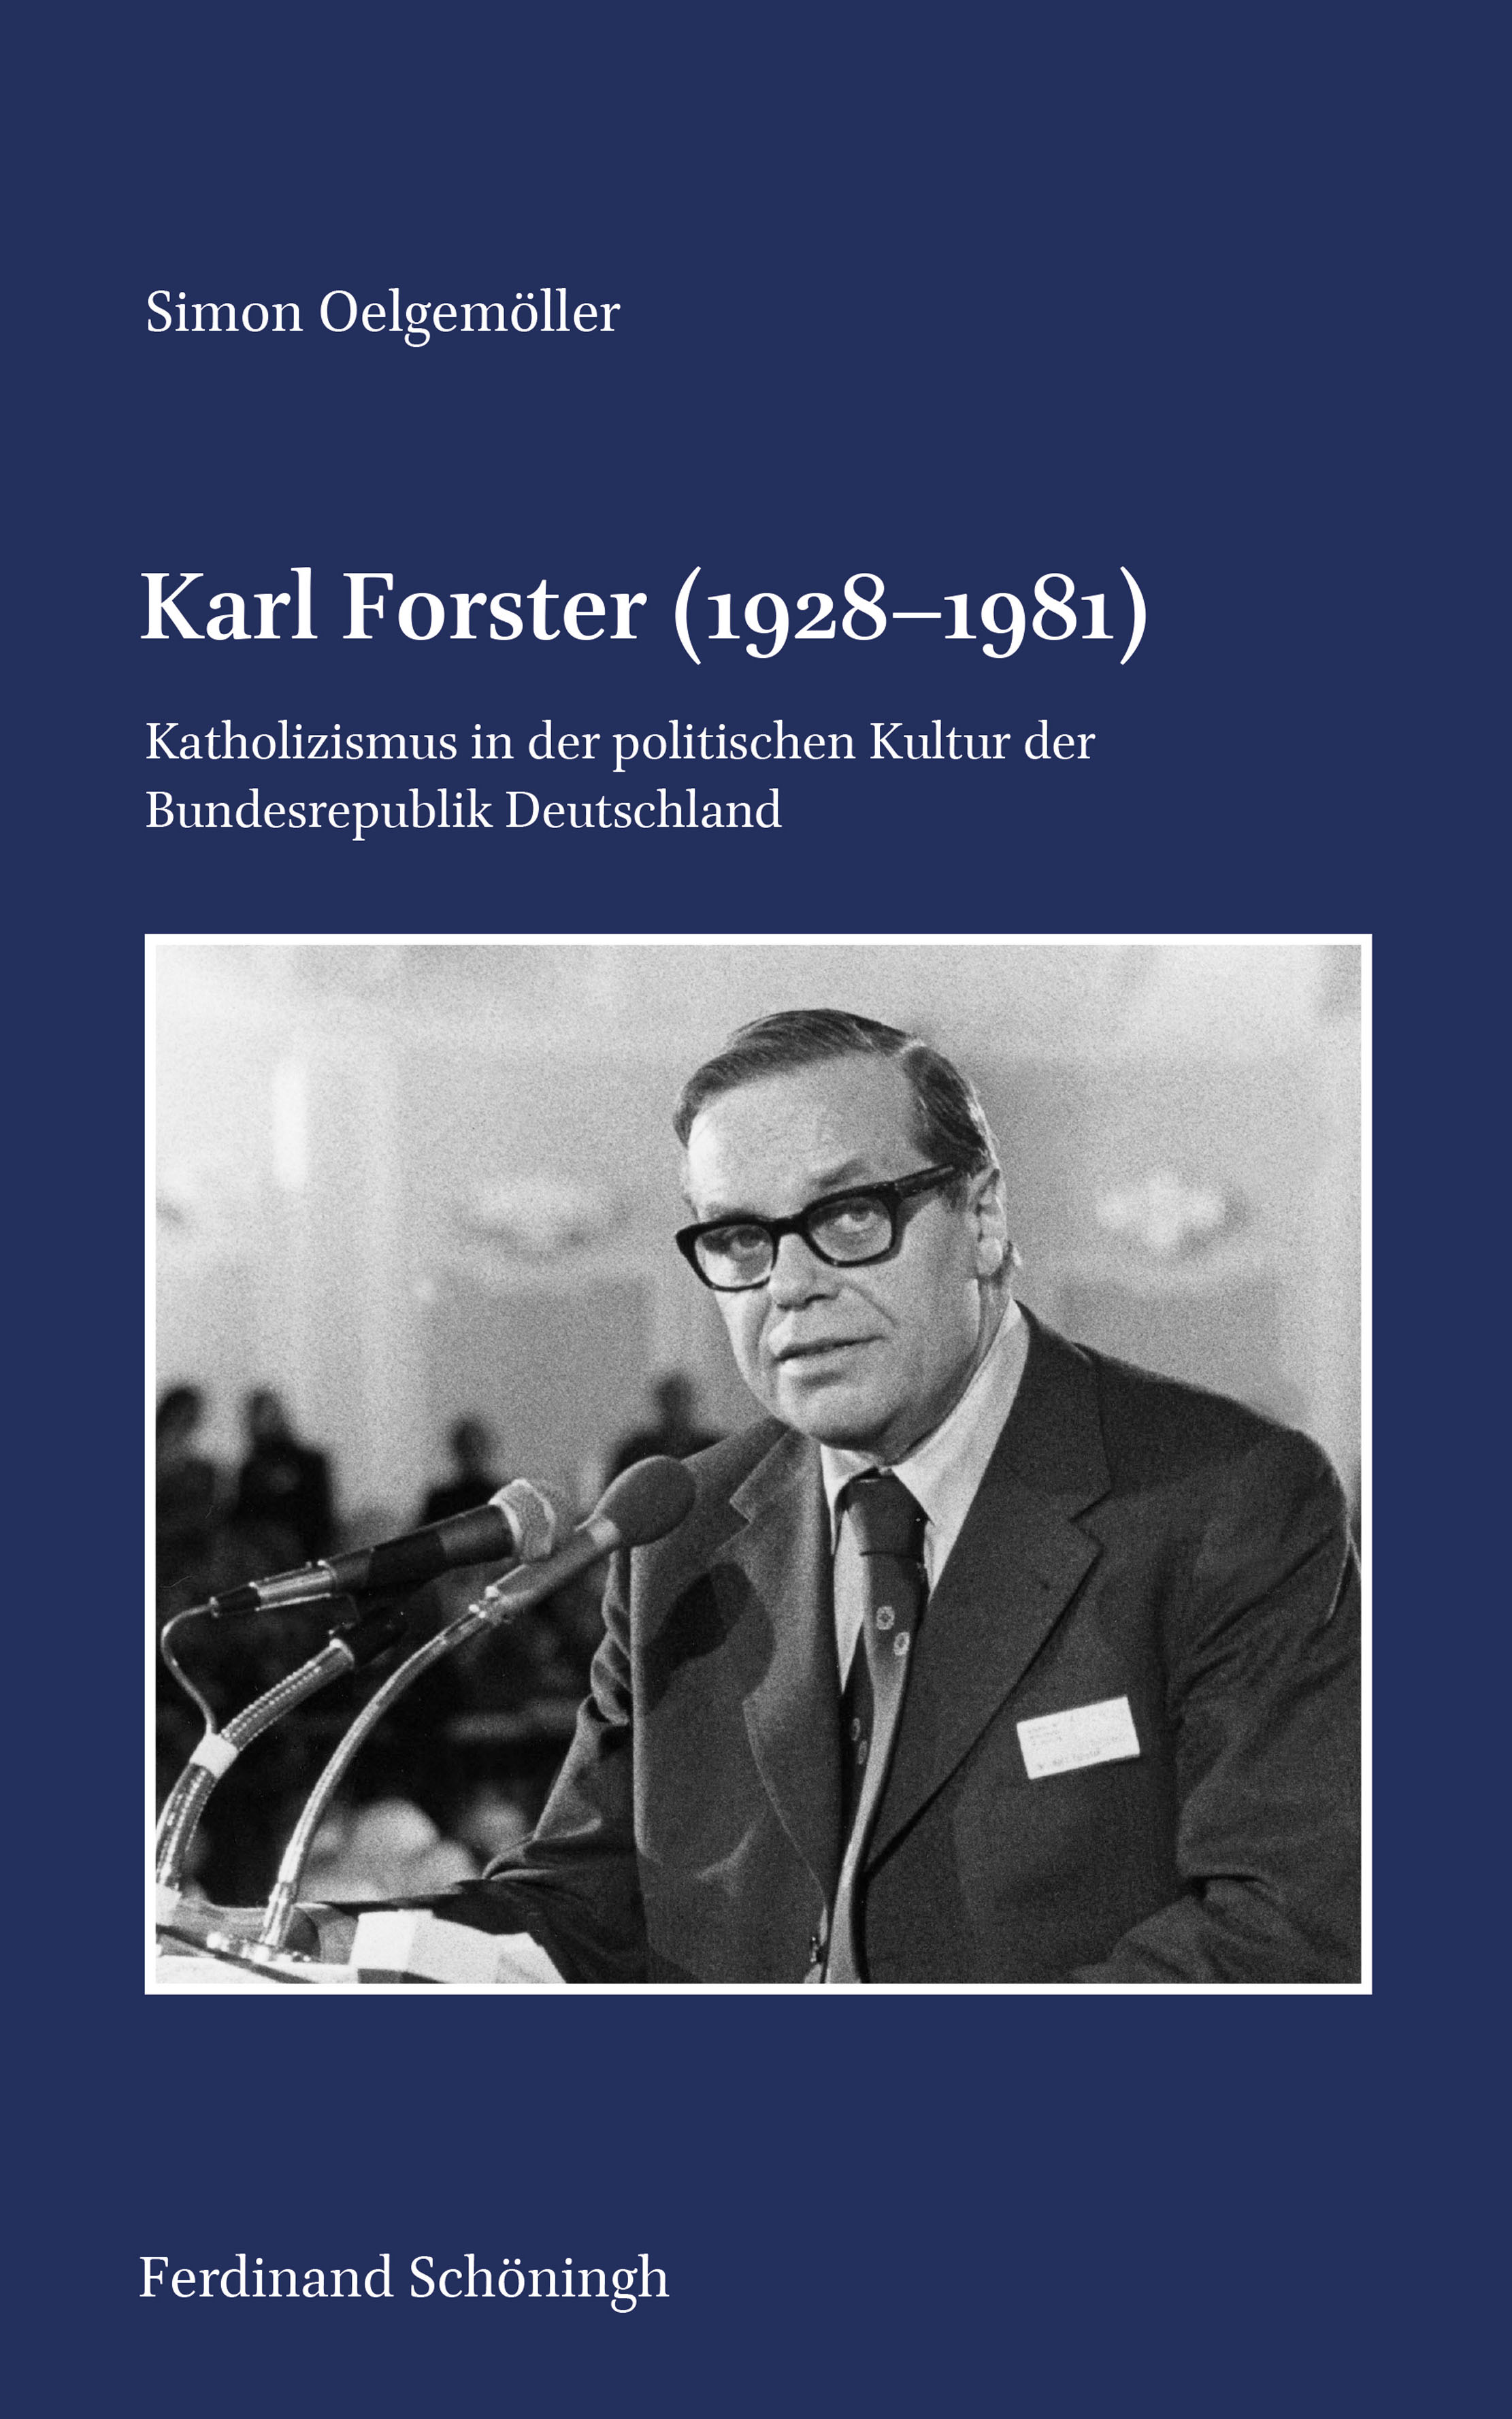 Simon Oelgemöller: Karl Forster (1928–1981). Katholizismus in der politischen Kultur der Bundesrepublik Deutschland.